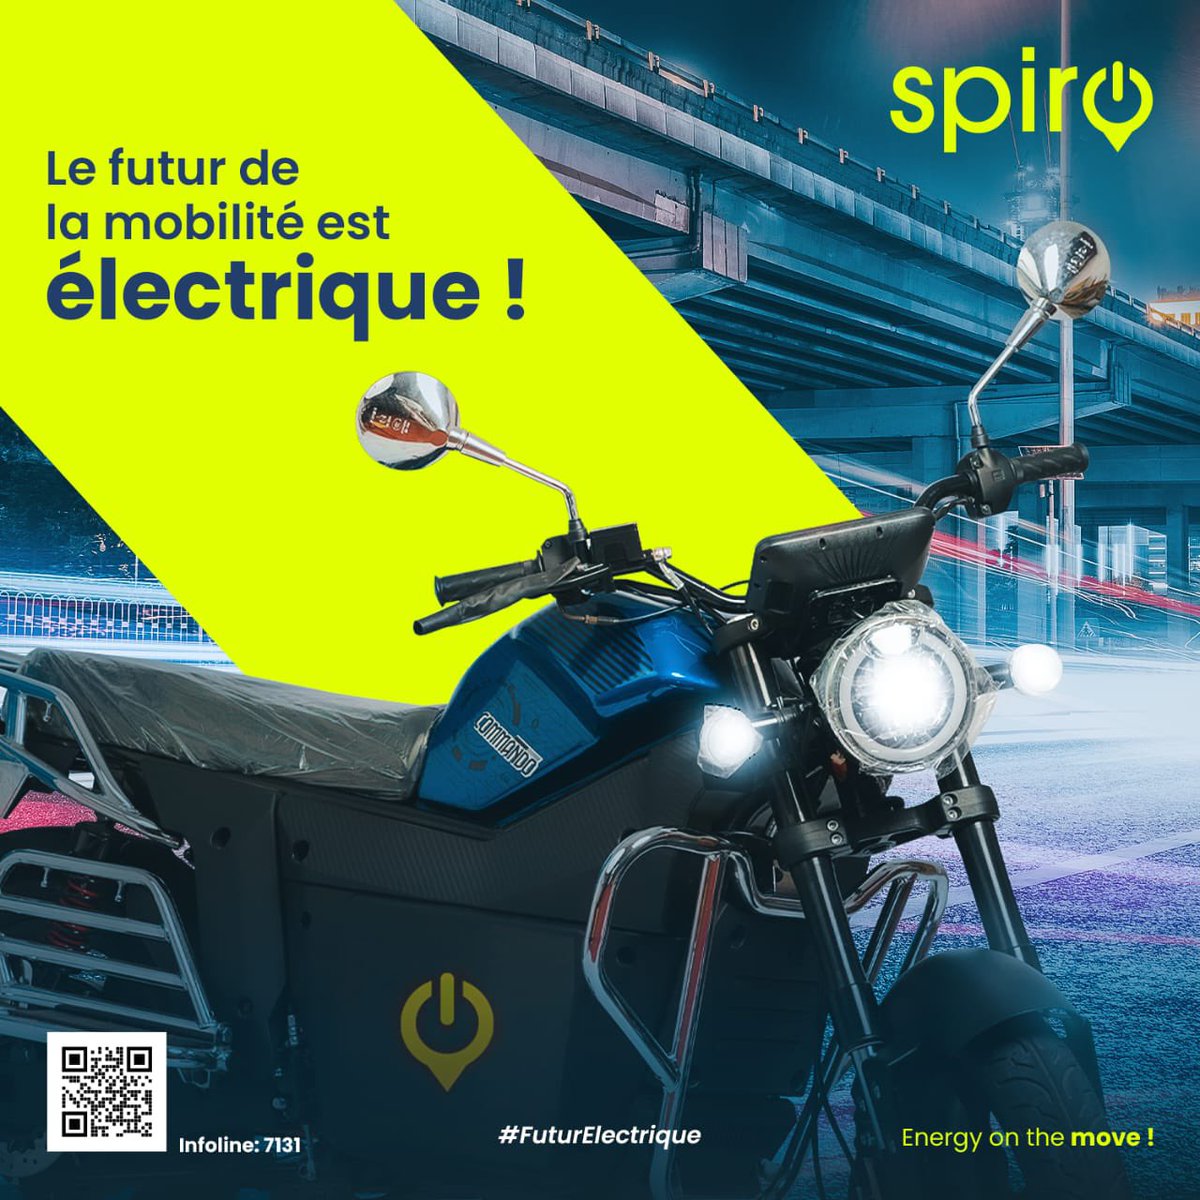 Faites le pari de la mobilité électrique avec @SpiroBenin 

Le futur est électrique !

#Spiro #SpiroBenin #MotoElectrique #GreenMobility #MobiliteElectrique #MobiliteDurable #EcoConduite #SpiroFlex #SmartSwapping #FuturElectrique